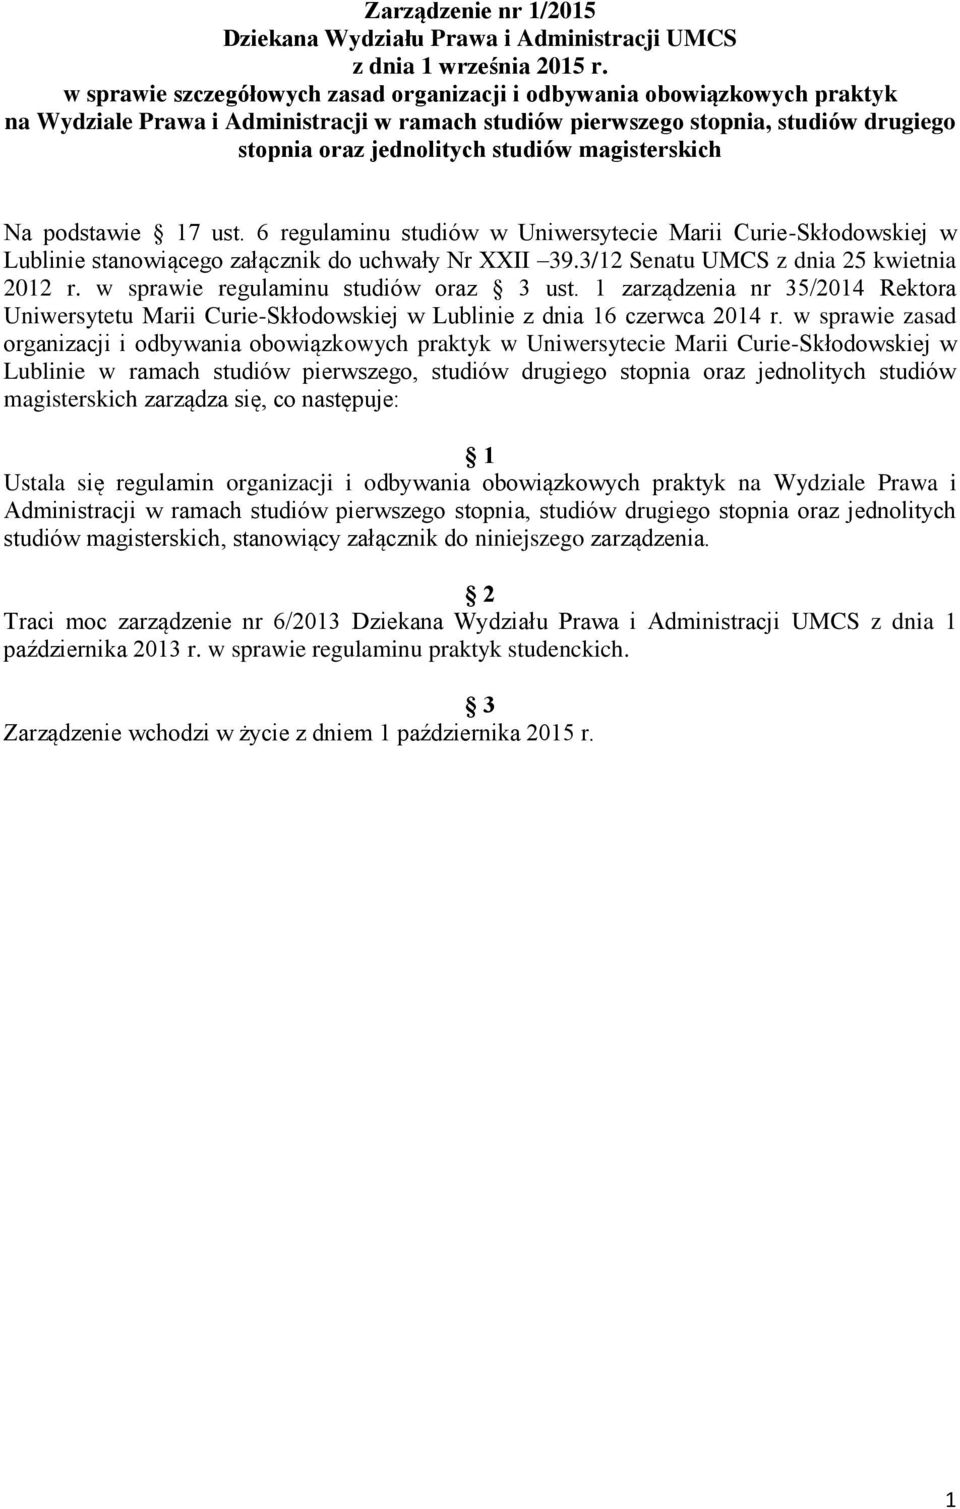 magisterskich Na podstawie 17 ust. 6 regulaminu studiów w Uniwersytecie Marii Curie-Skłodowskiej w Lublinie stanowiącego załącznik do uchwały Nr XXII 39.3/12 Senatu UMCS z dnia 25 kwietnia 2012 r.